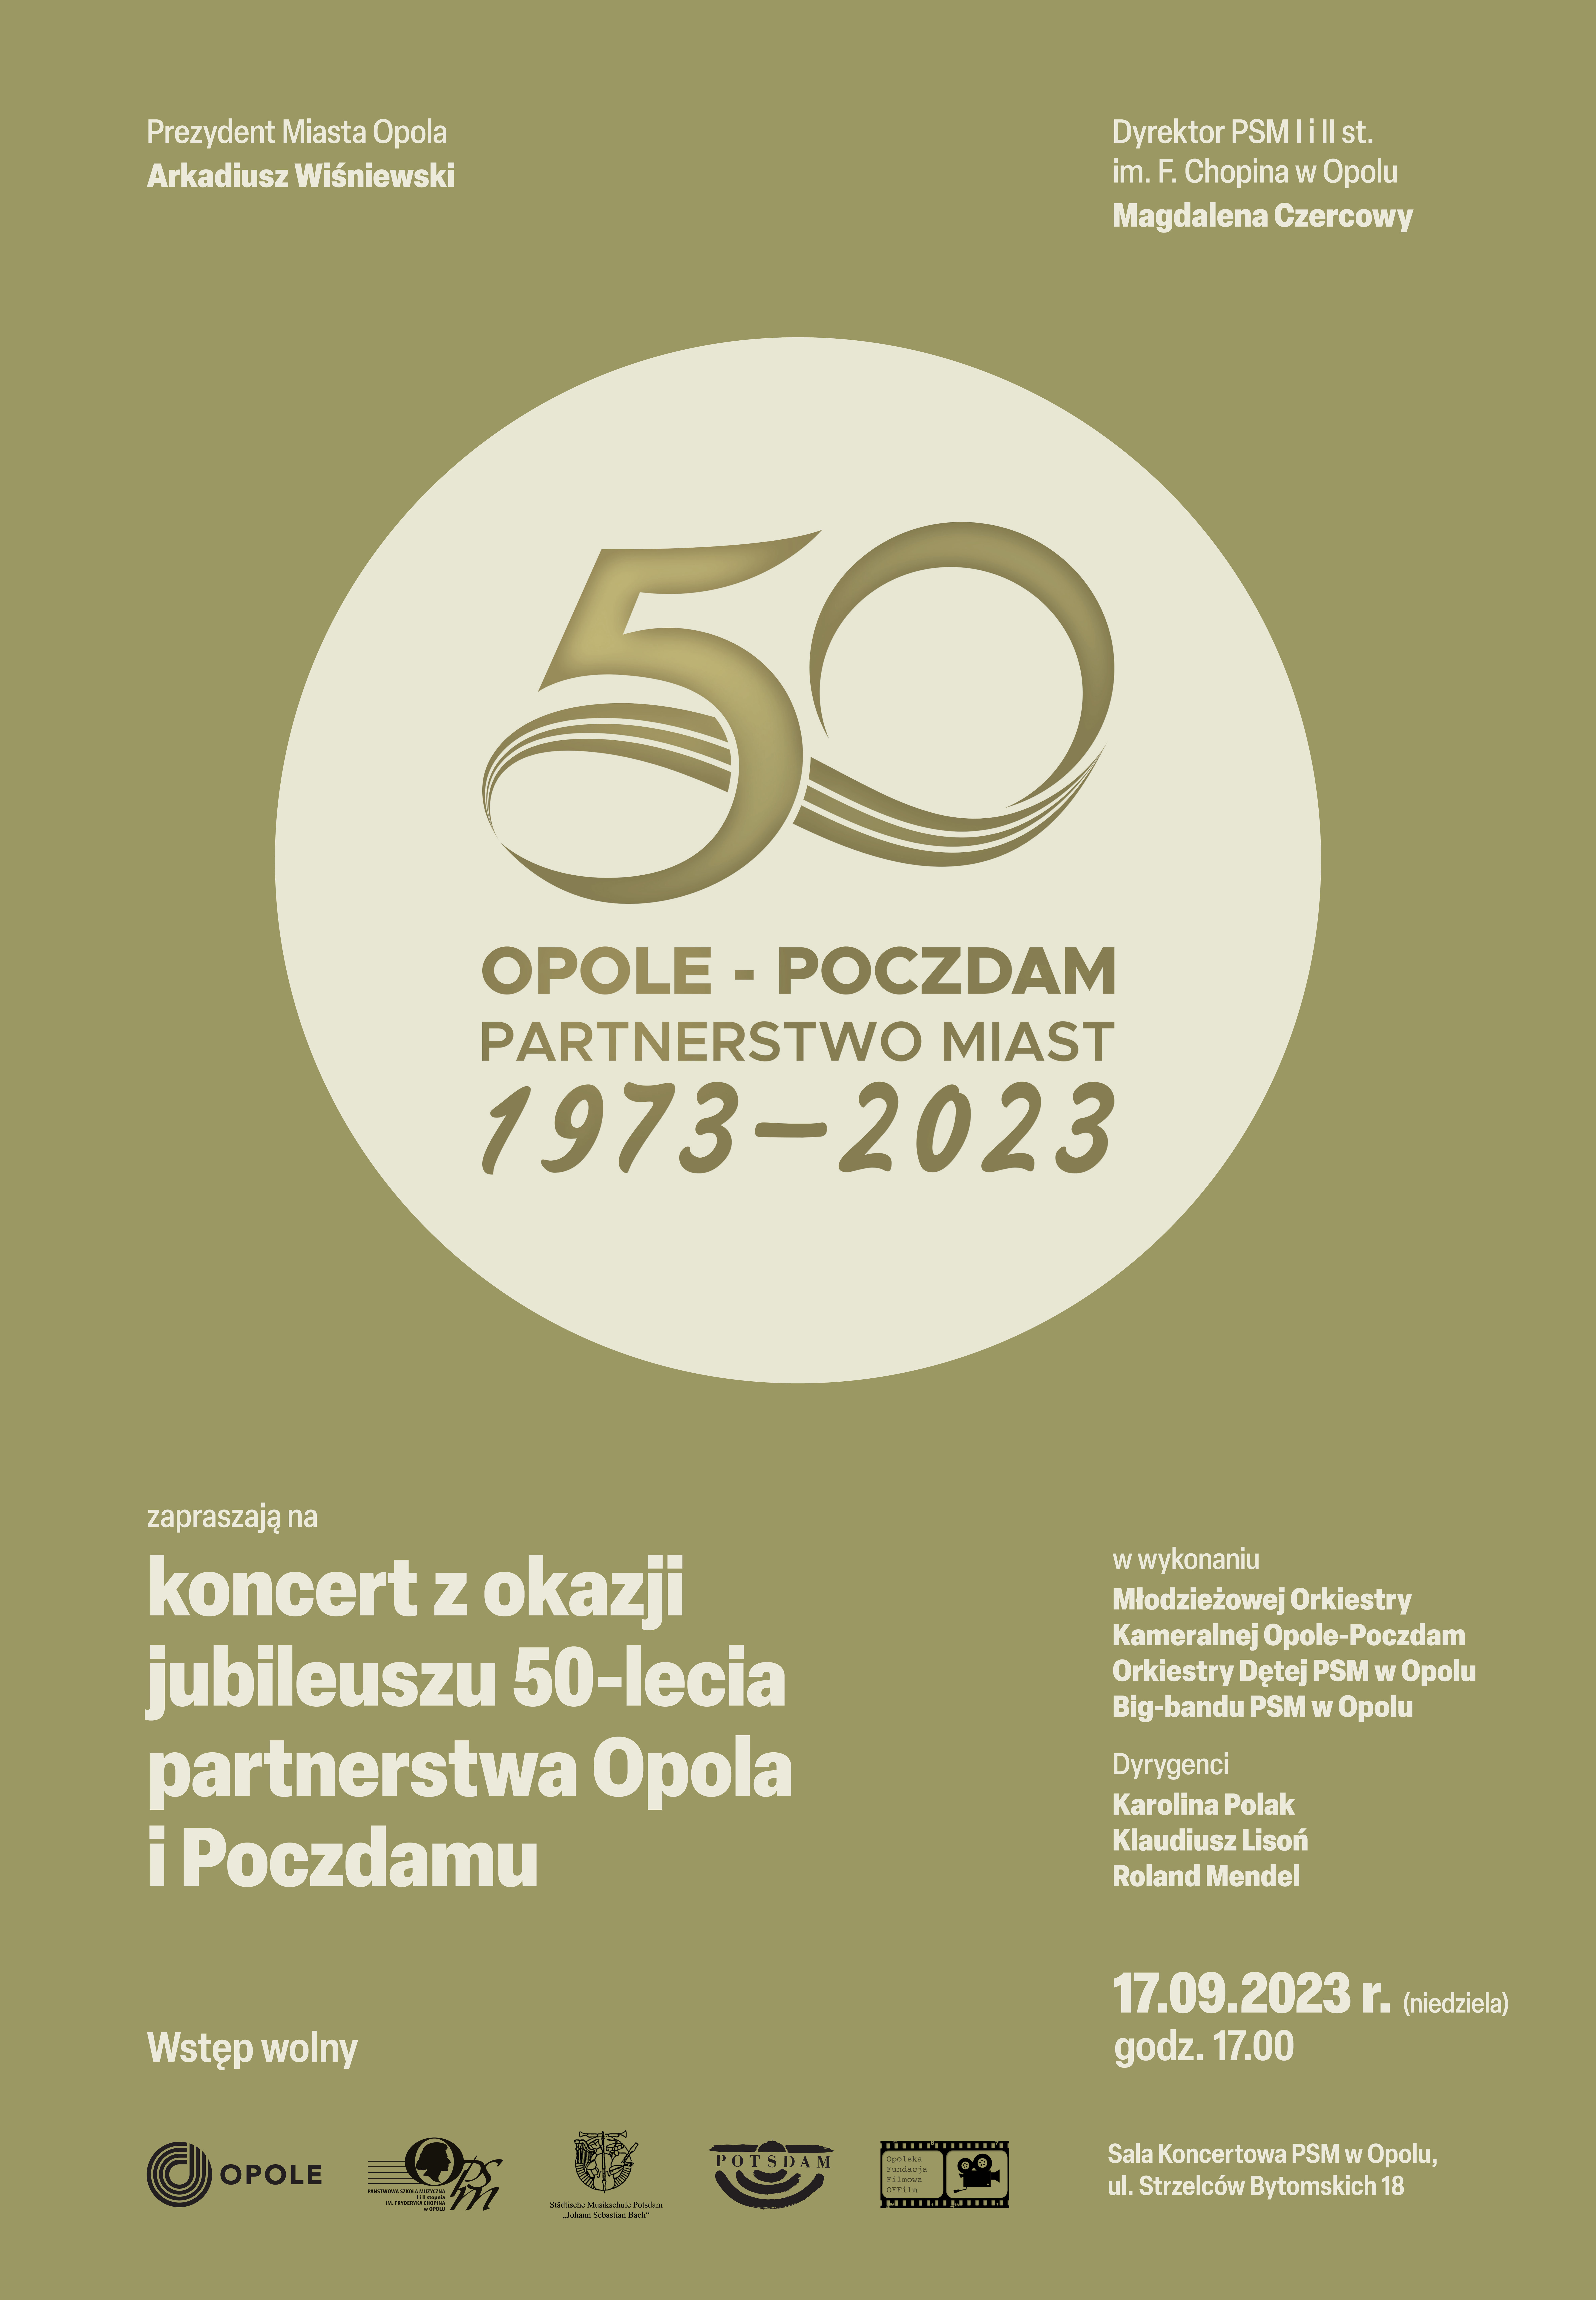 Koncert z okazji Jubileuszu 50-lecia partnerstwa miast Opole-Poczdam